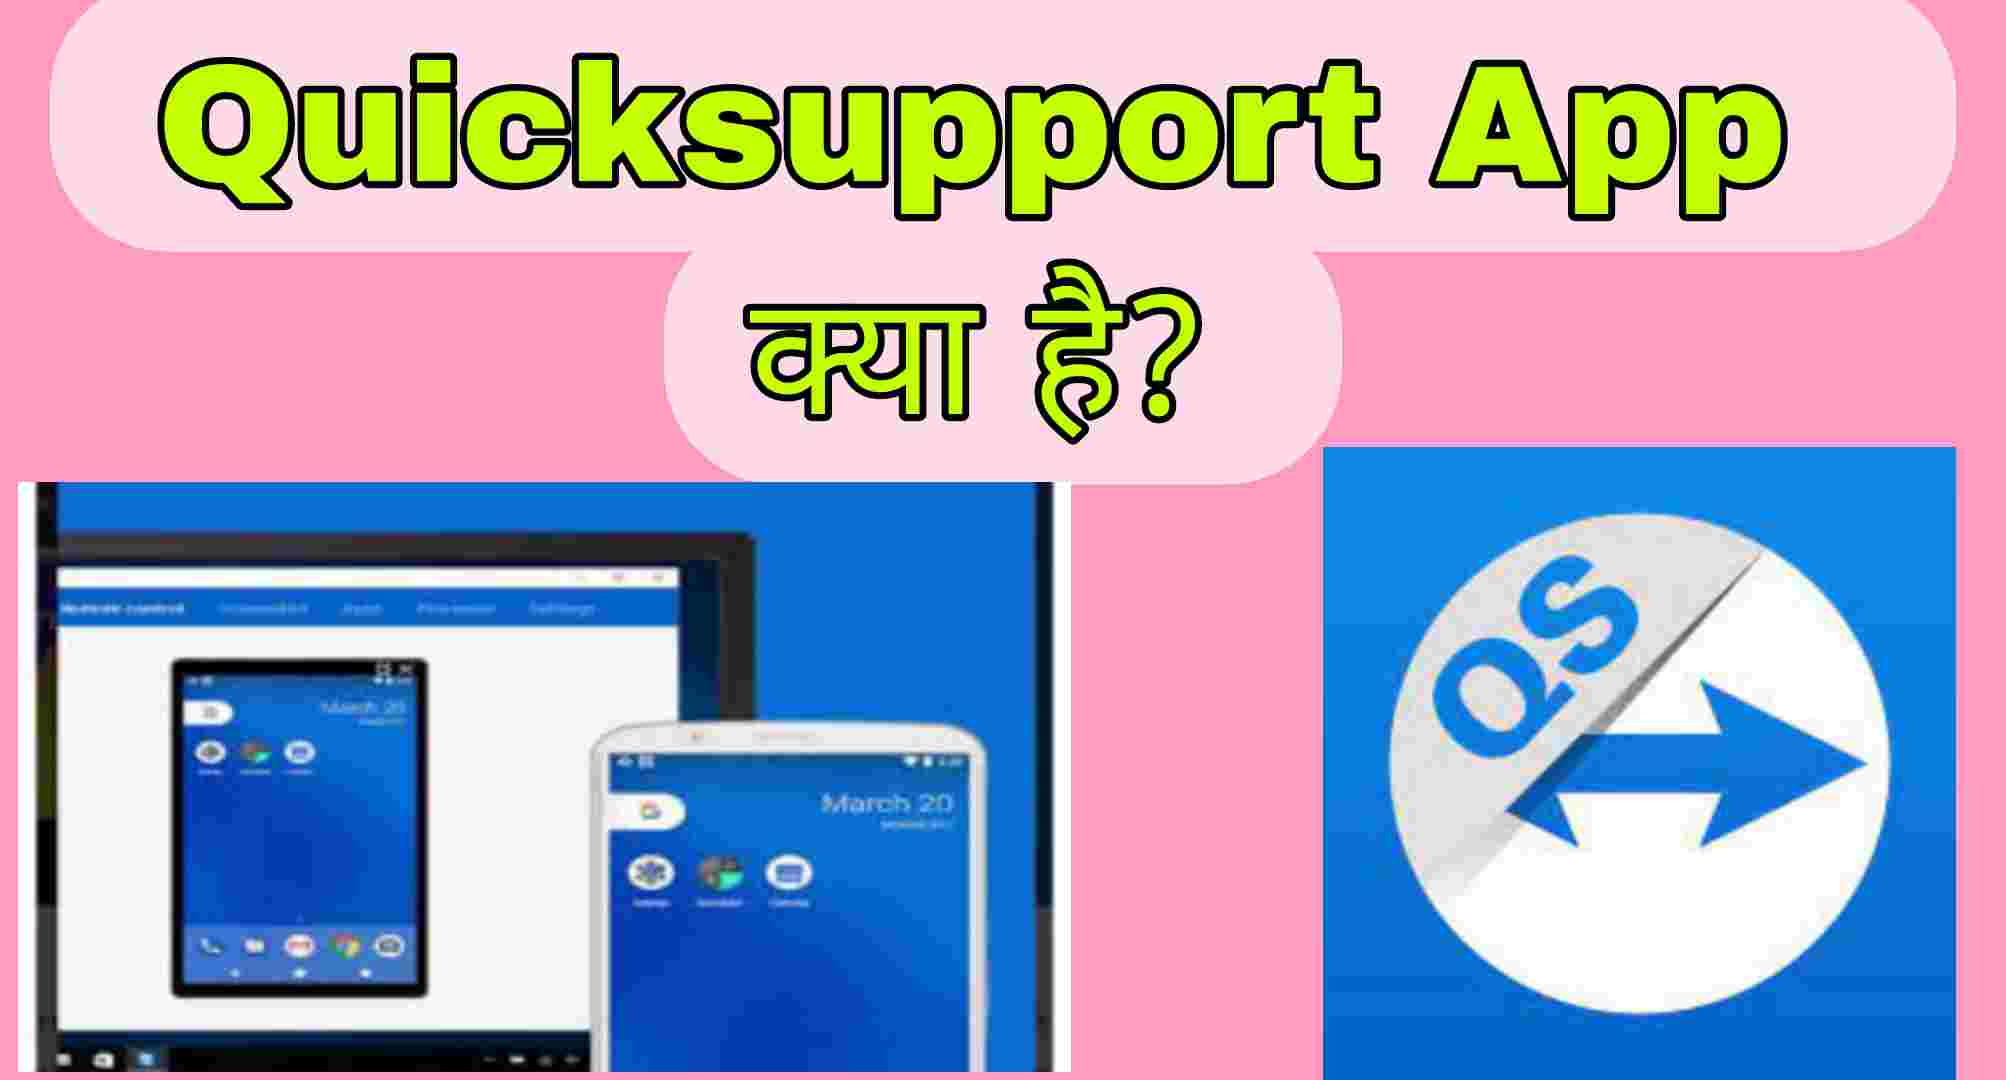 Quicksupport App Kya Hai